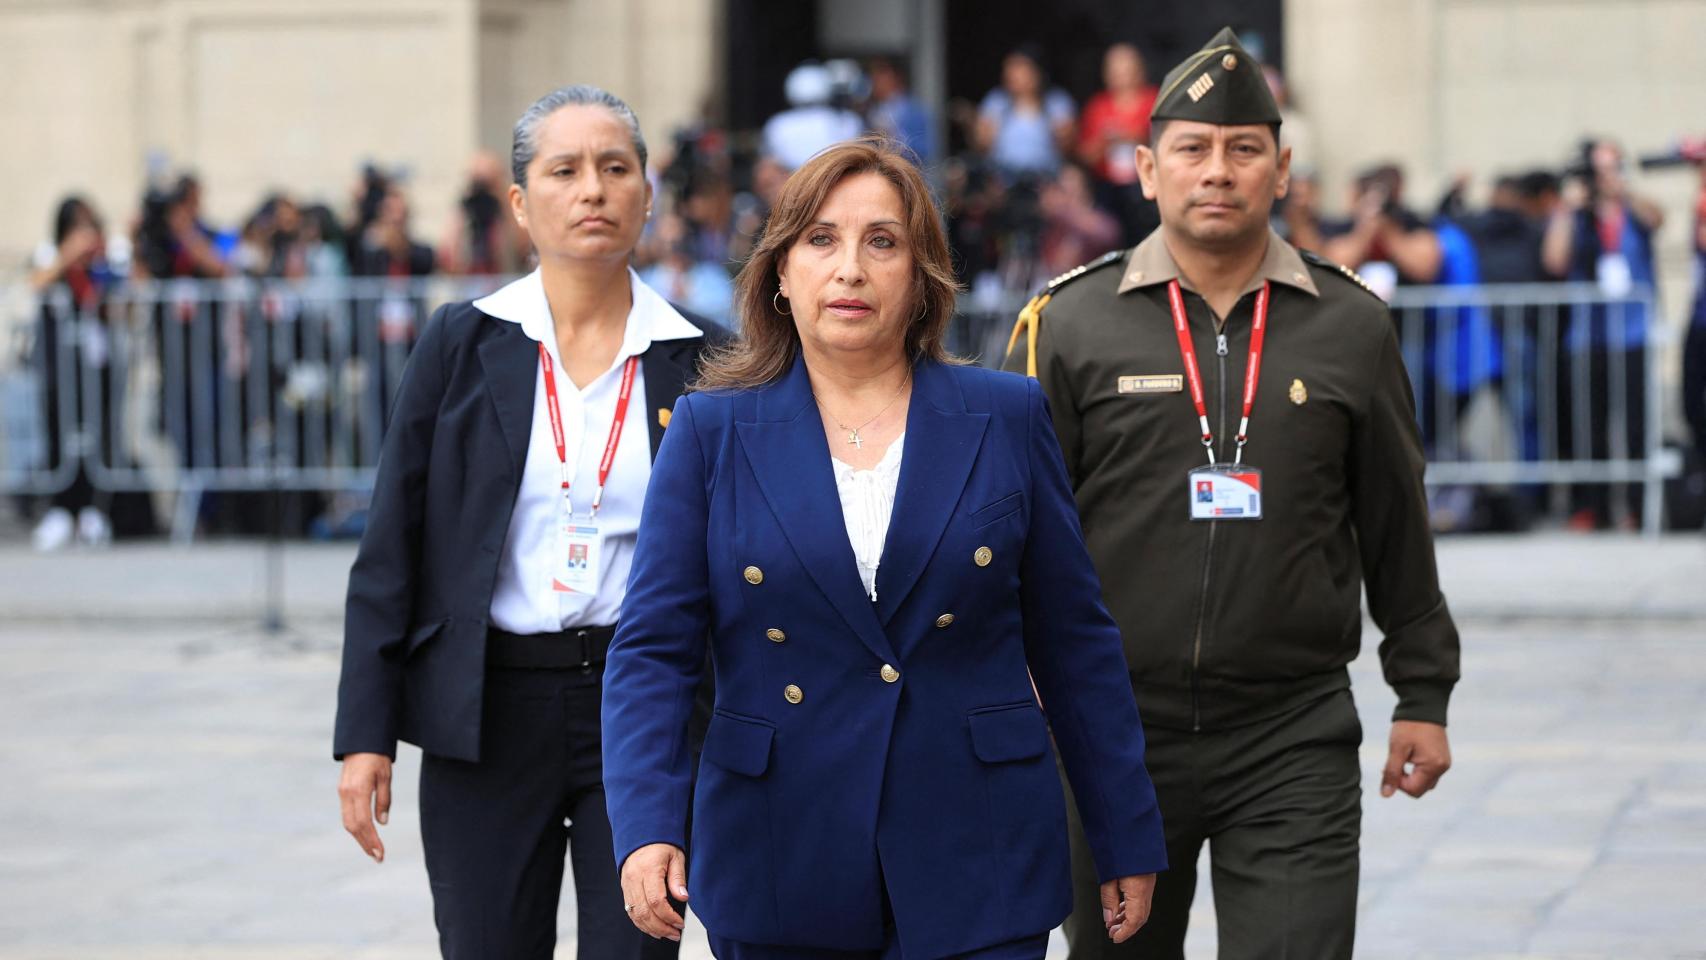 La presidenta de Perú, Dina Boluarte, camina acompañada de dos funcionarios en las afueras del palacio de gobierno.